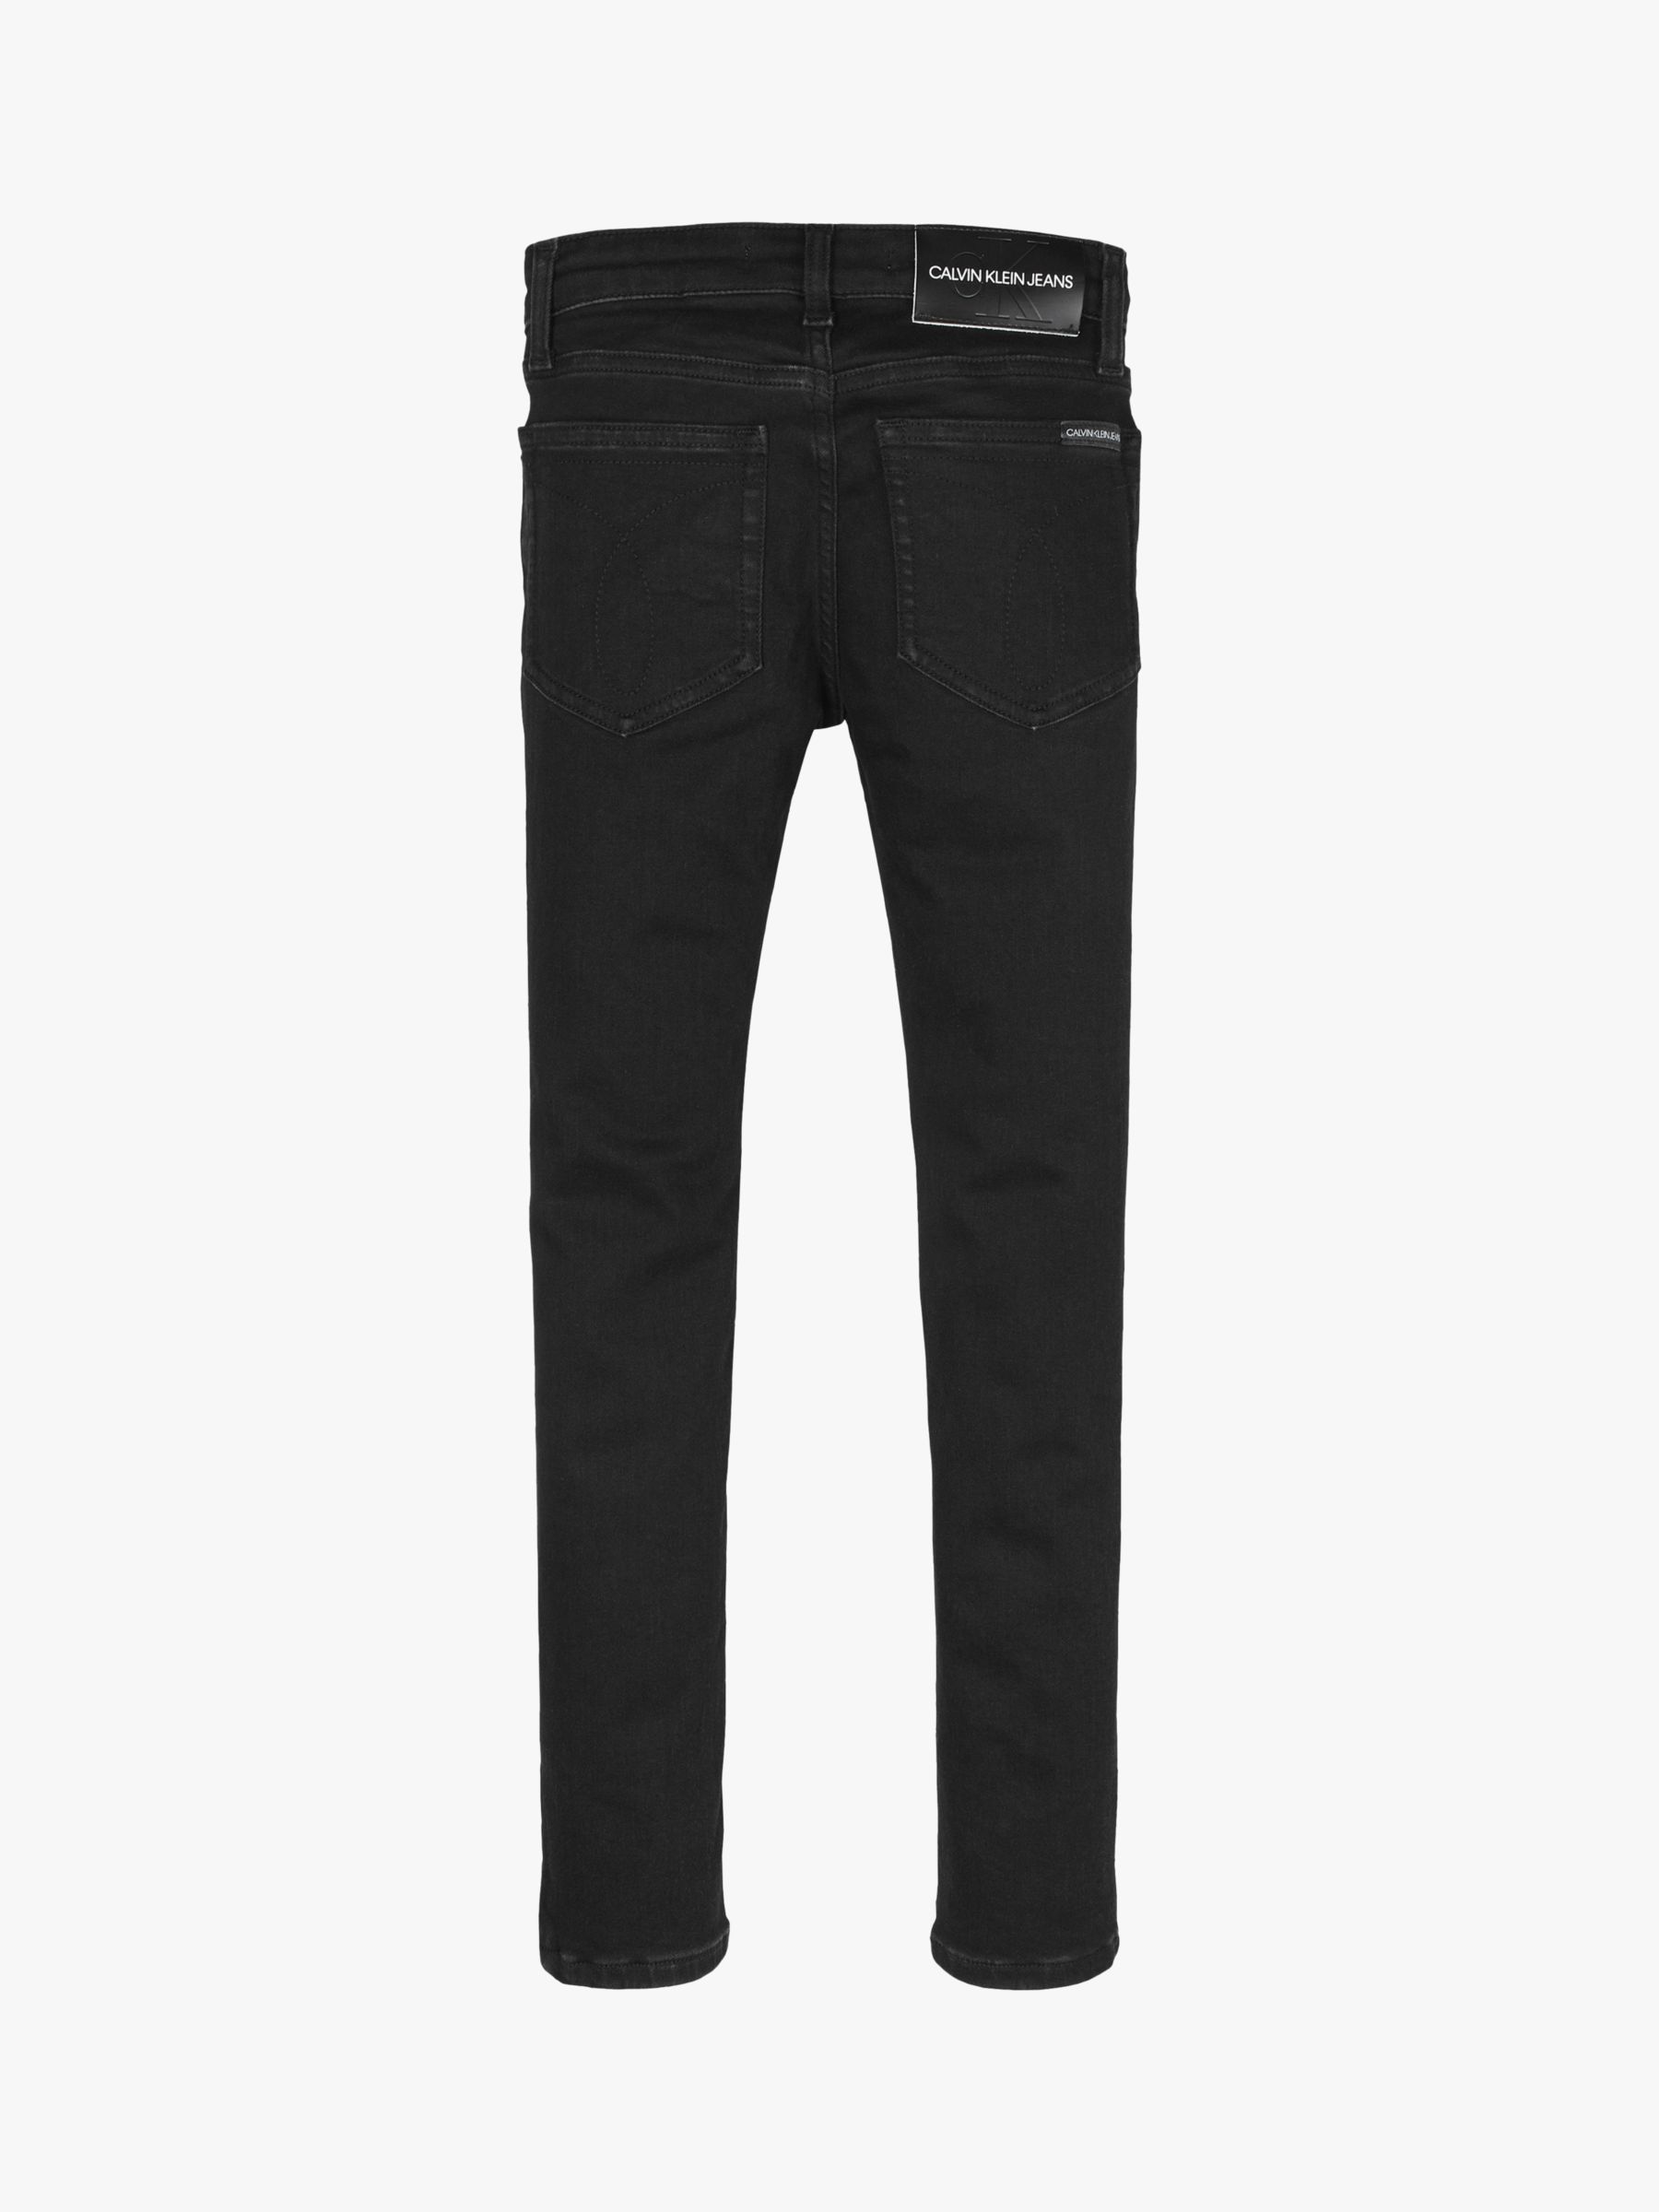 Calvin Klein Boys' Denim Skinny Jeans, Clean Black, 6 years